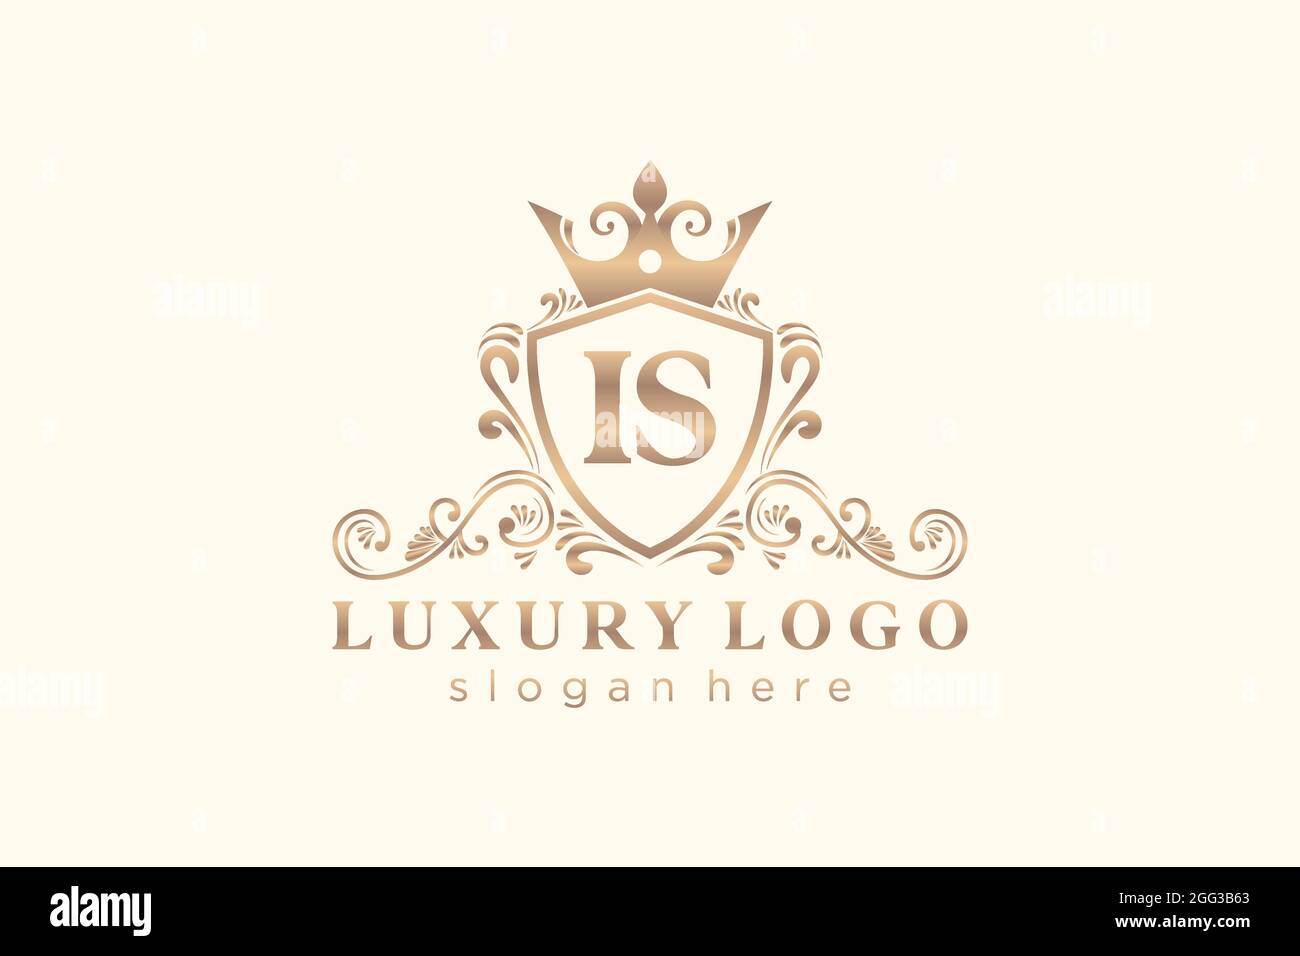 IST Buchstabe Royal Luxury Logo Vorlage in Vektorgrafik für Restaurant, Royalty, Boutique, Cafe, Hotel, Heraldisch, Schmuck, Mode und andere Vektor illustrr Stock Vektor